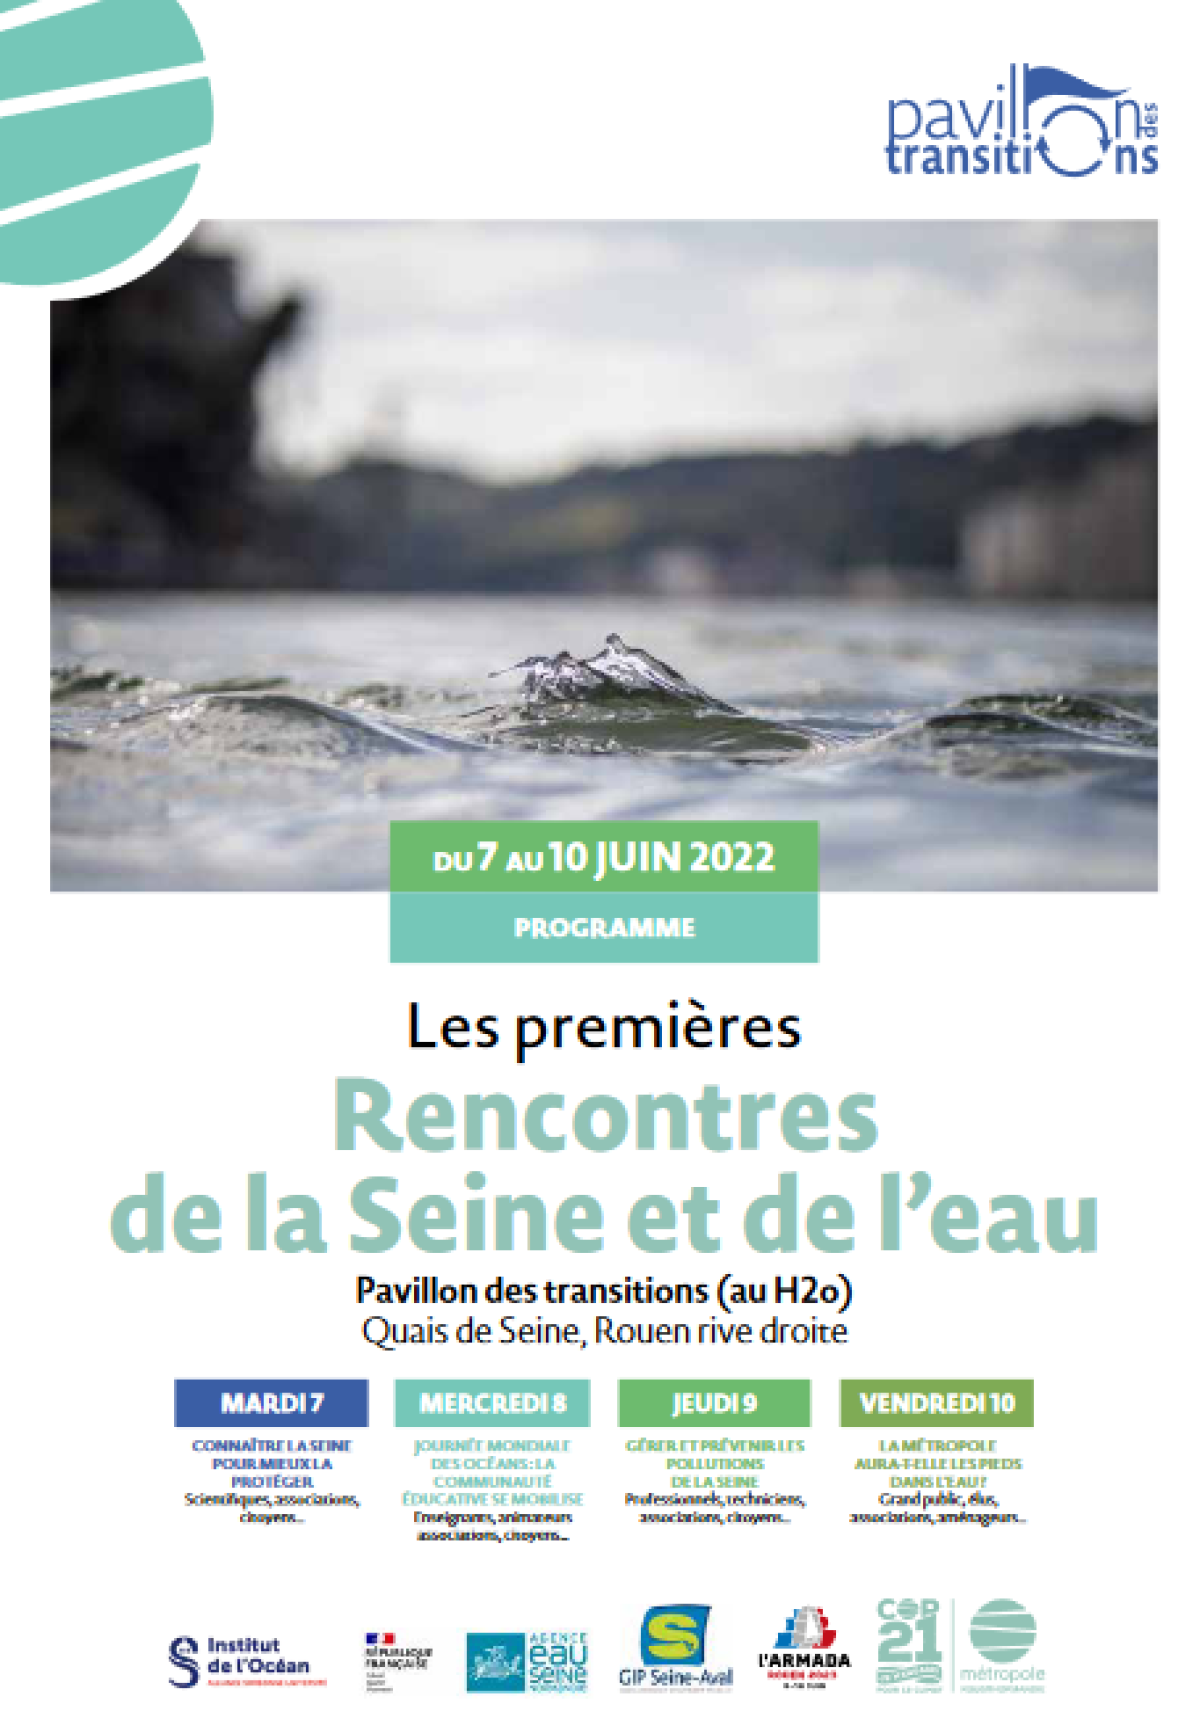 Les premières Rencontres de la Seine et de l’Eau auront lieu du 7 au 10 juin à Rouen